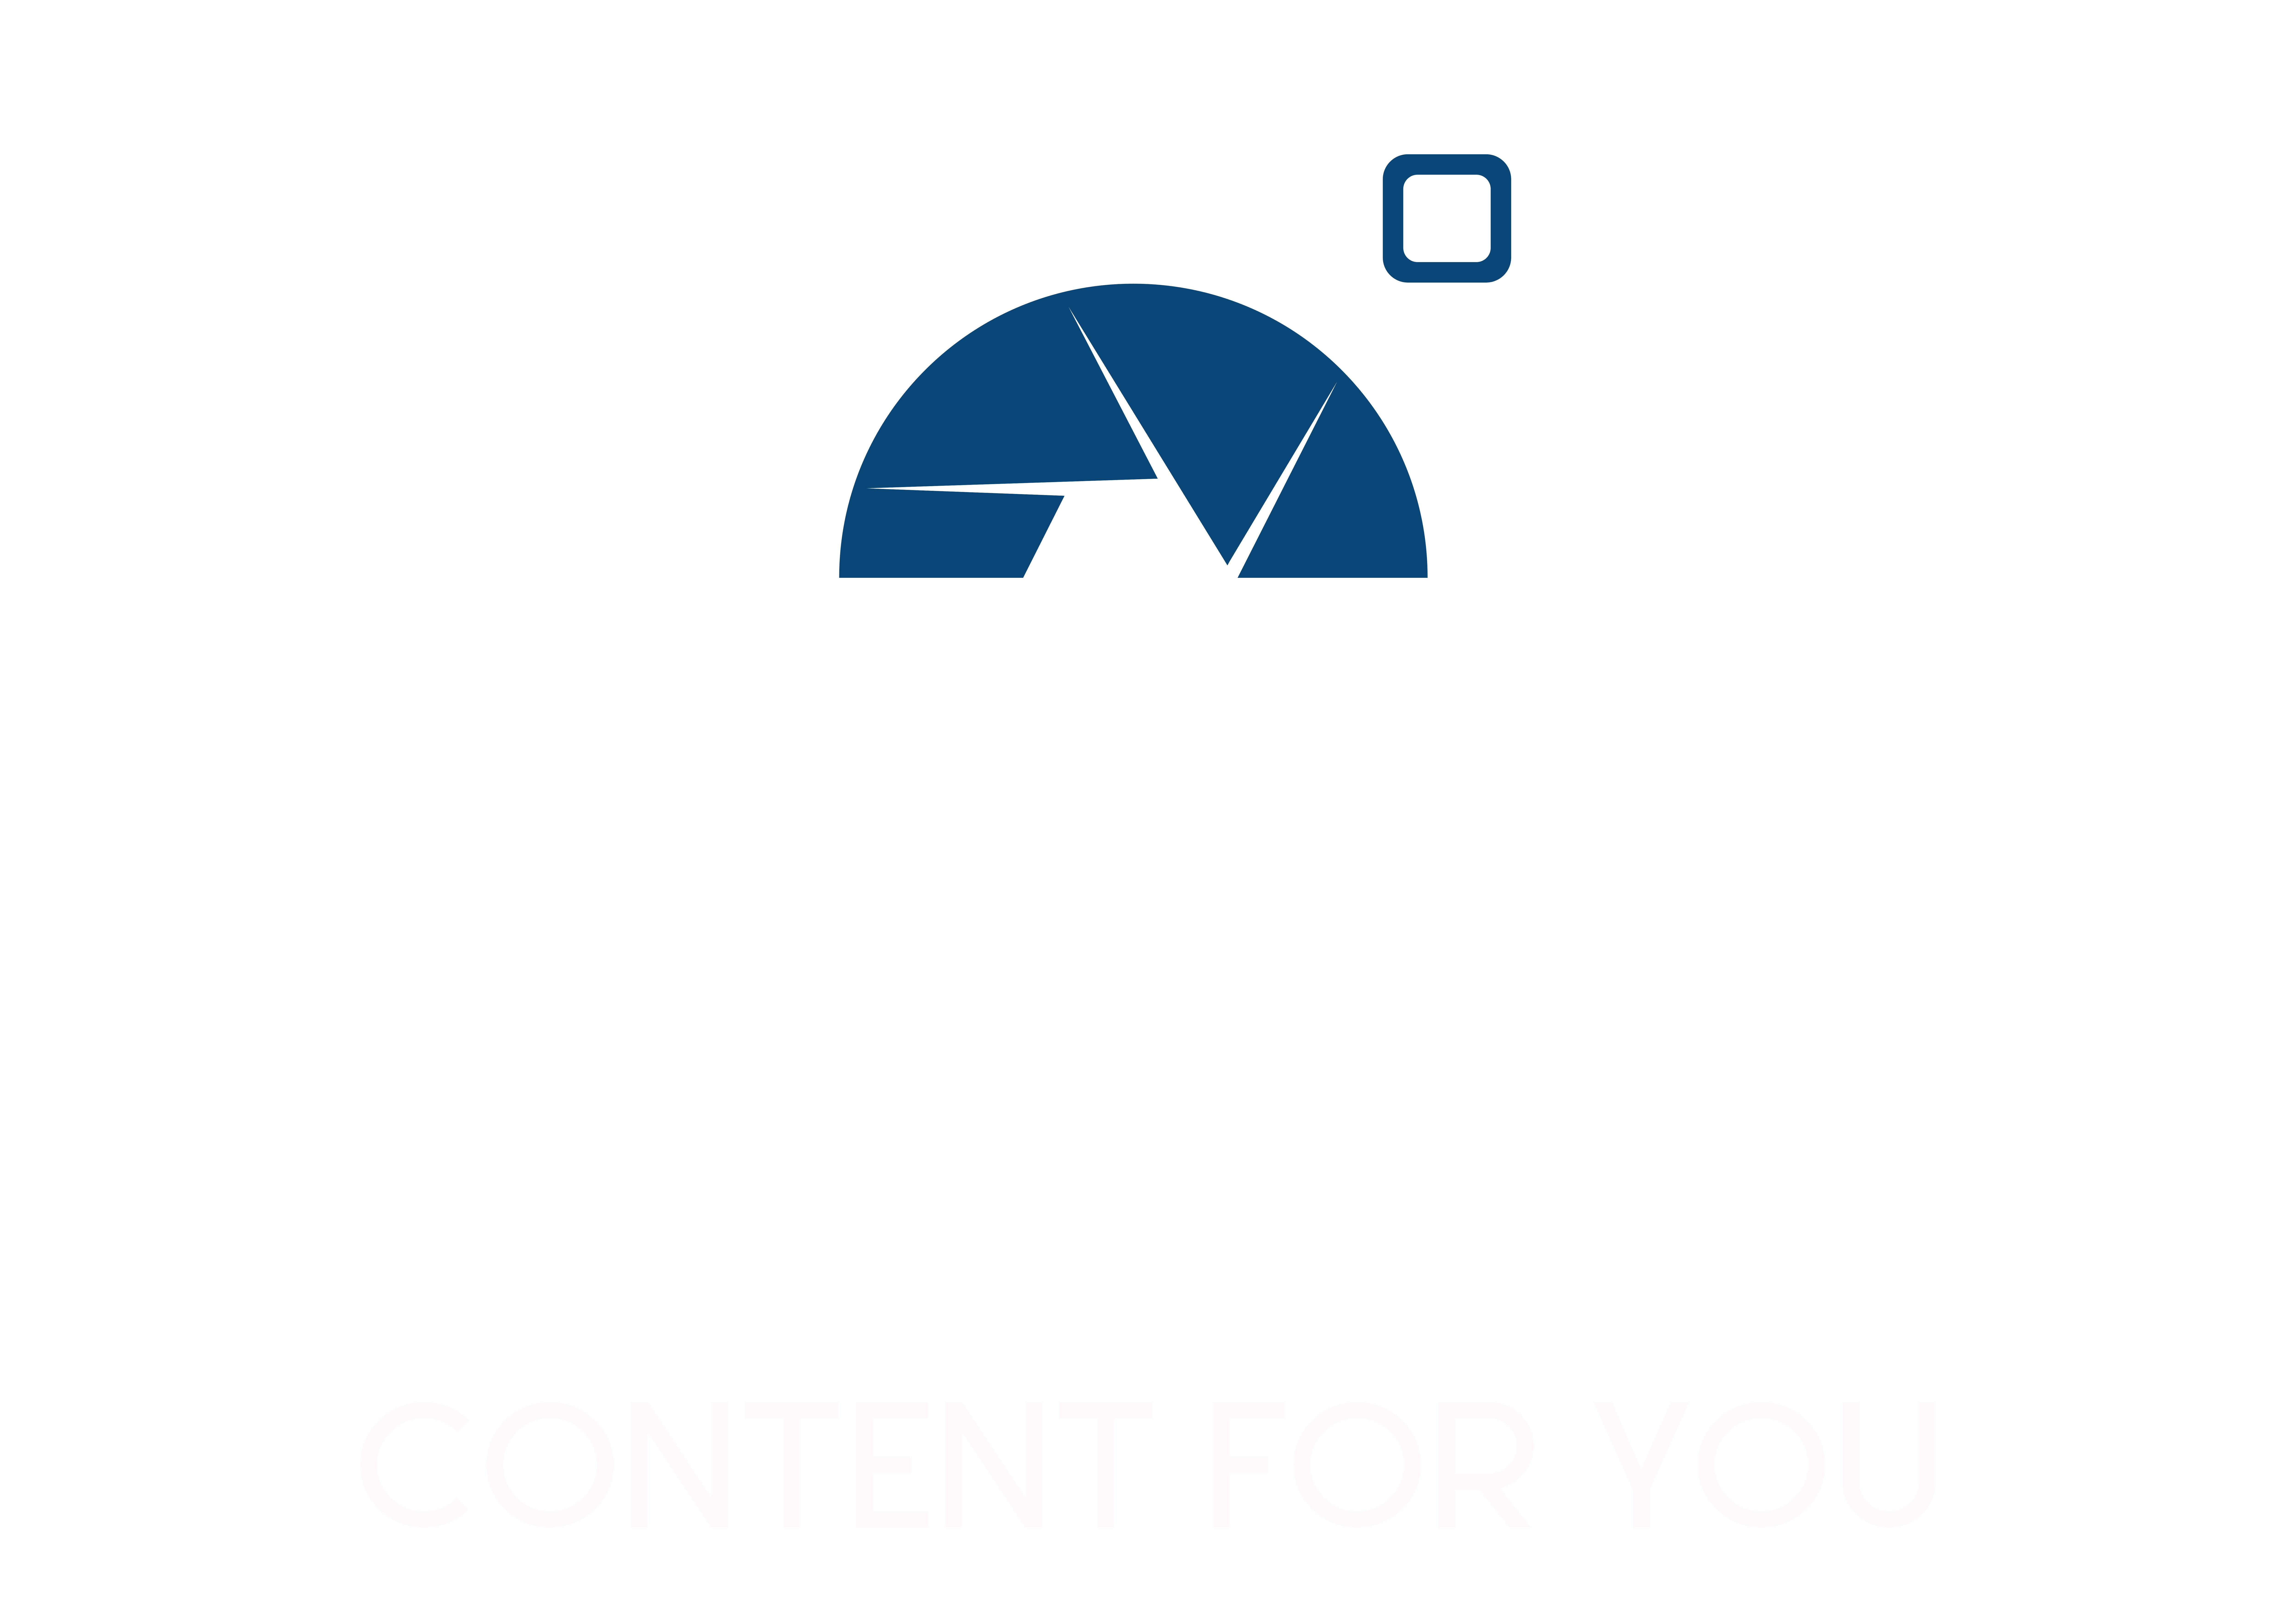 Follow focus